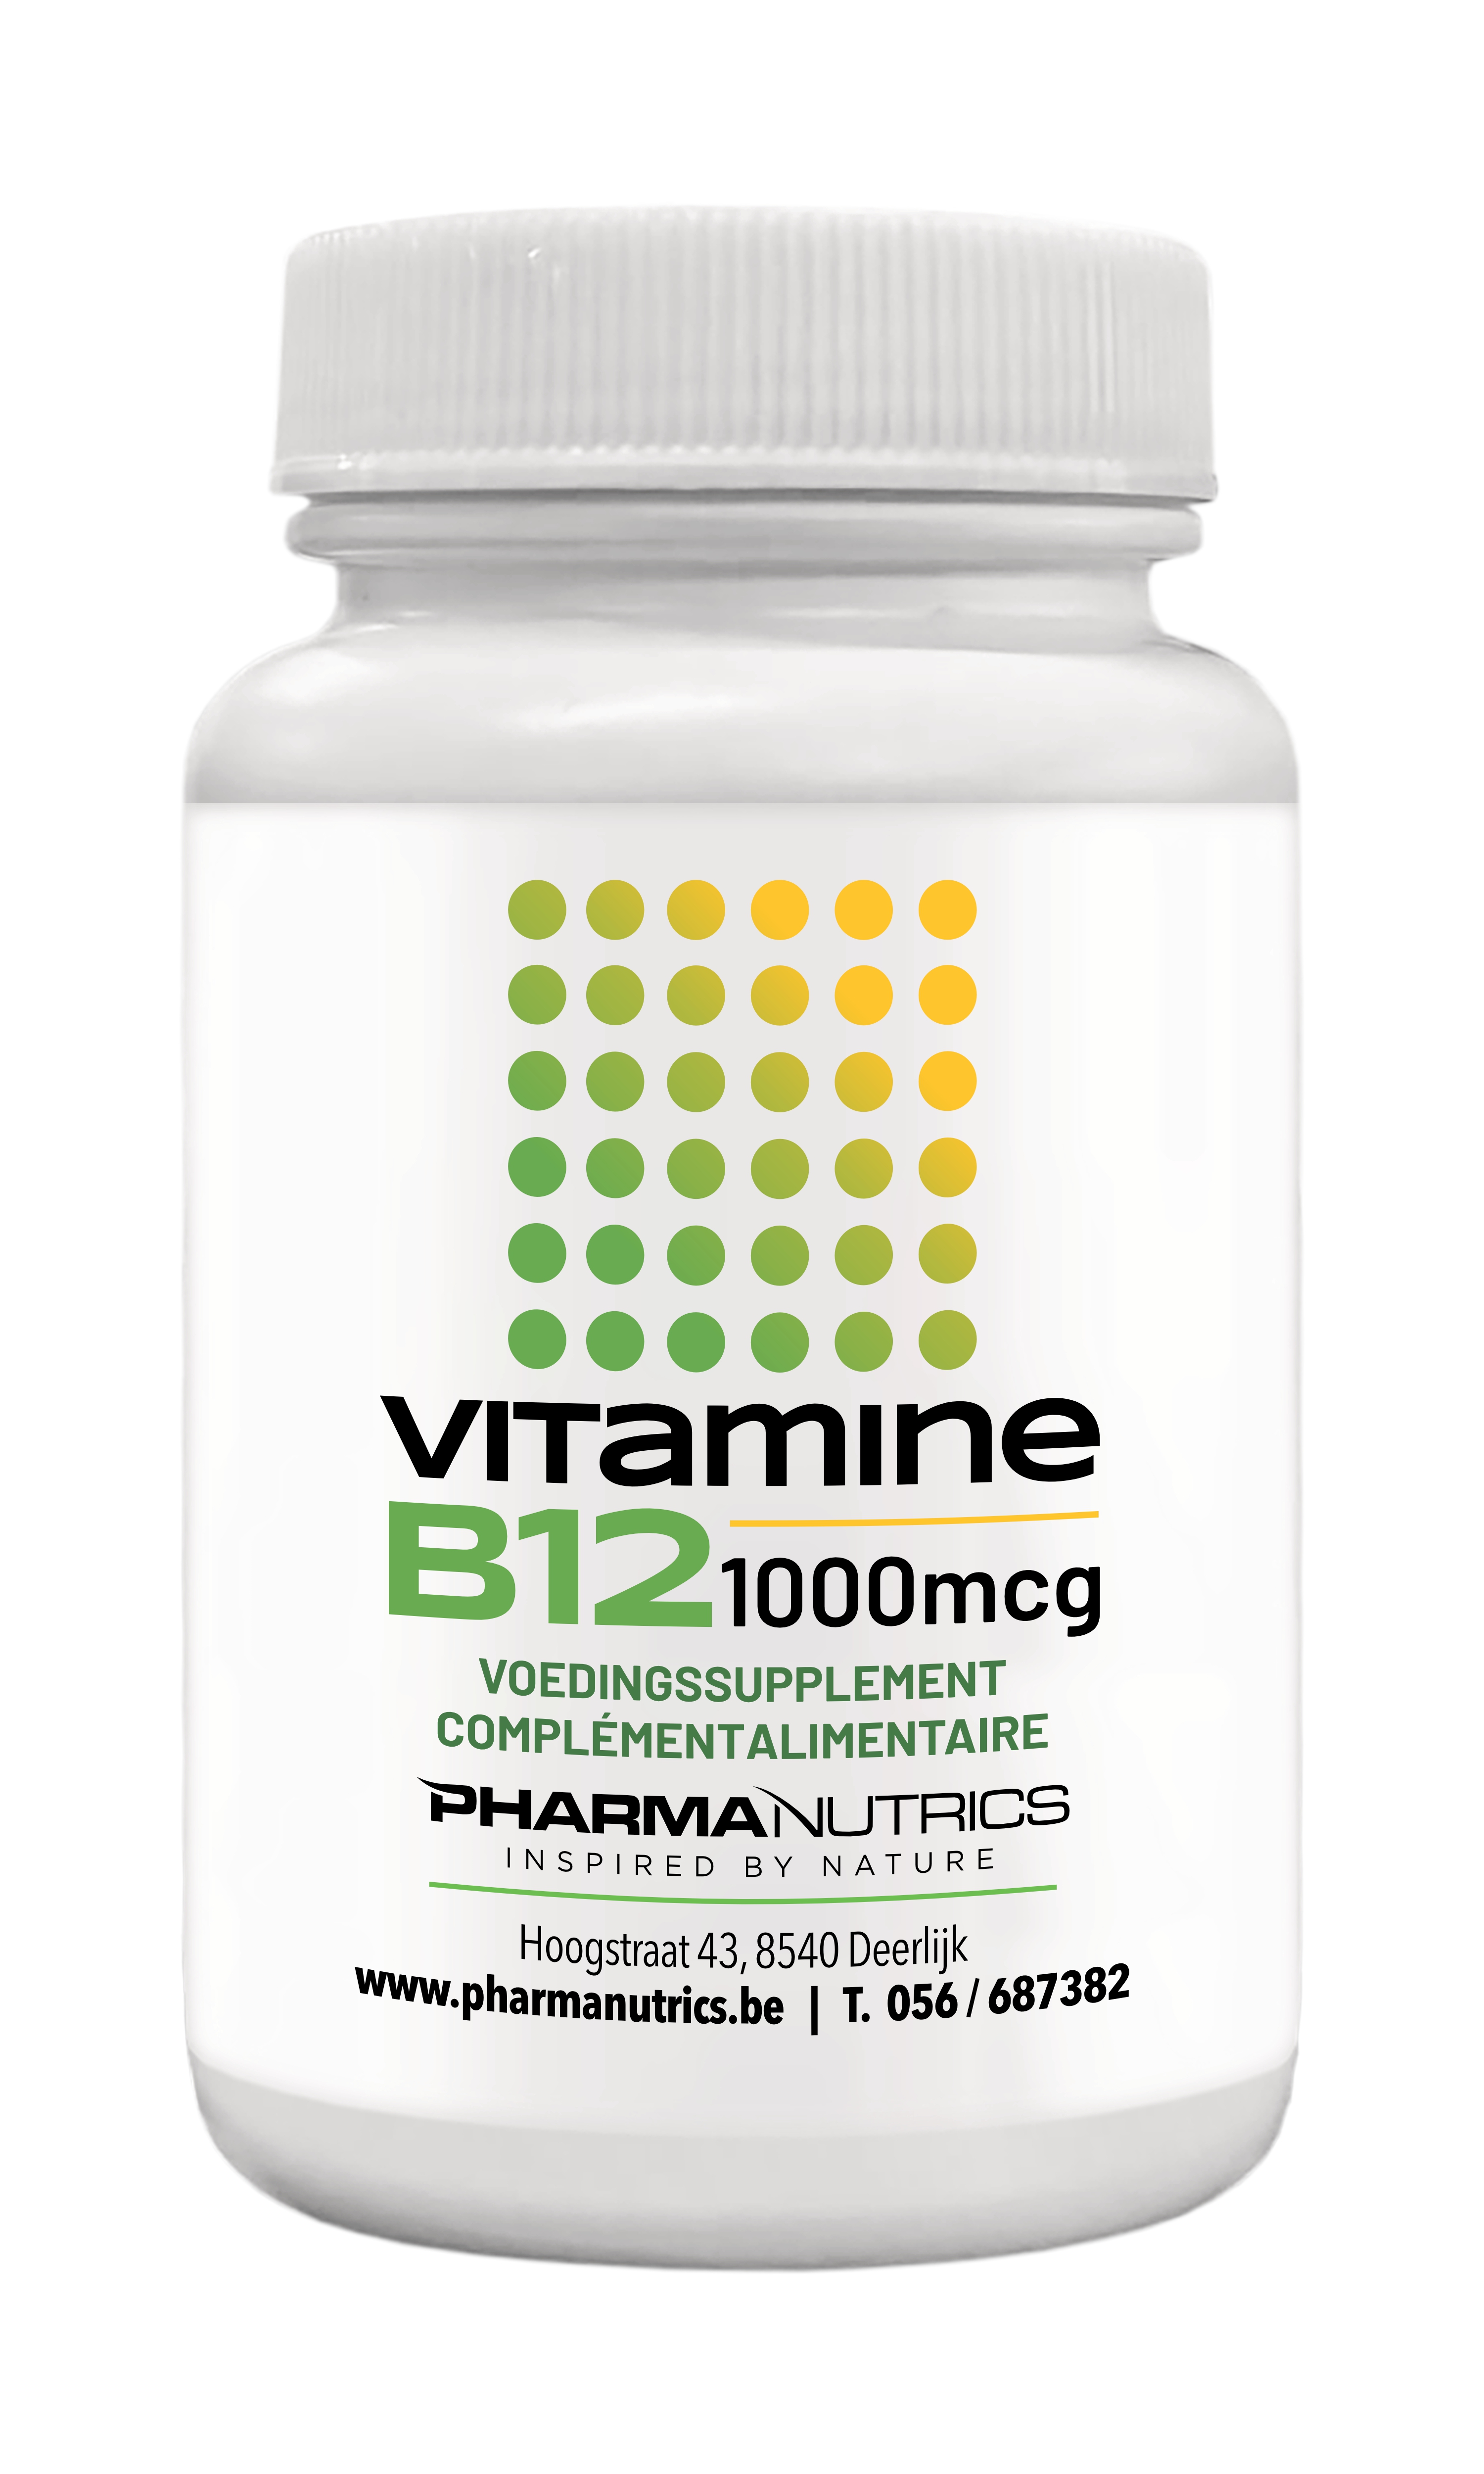 Vitamine B12 (1000 mcg) - 120 kauwtabs